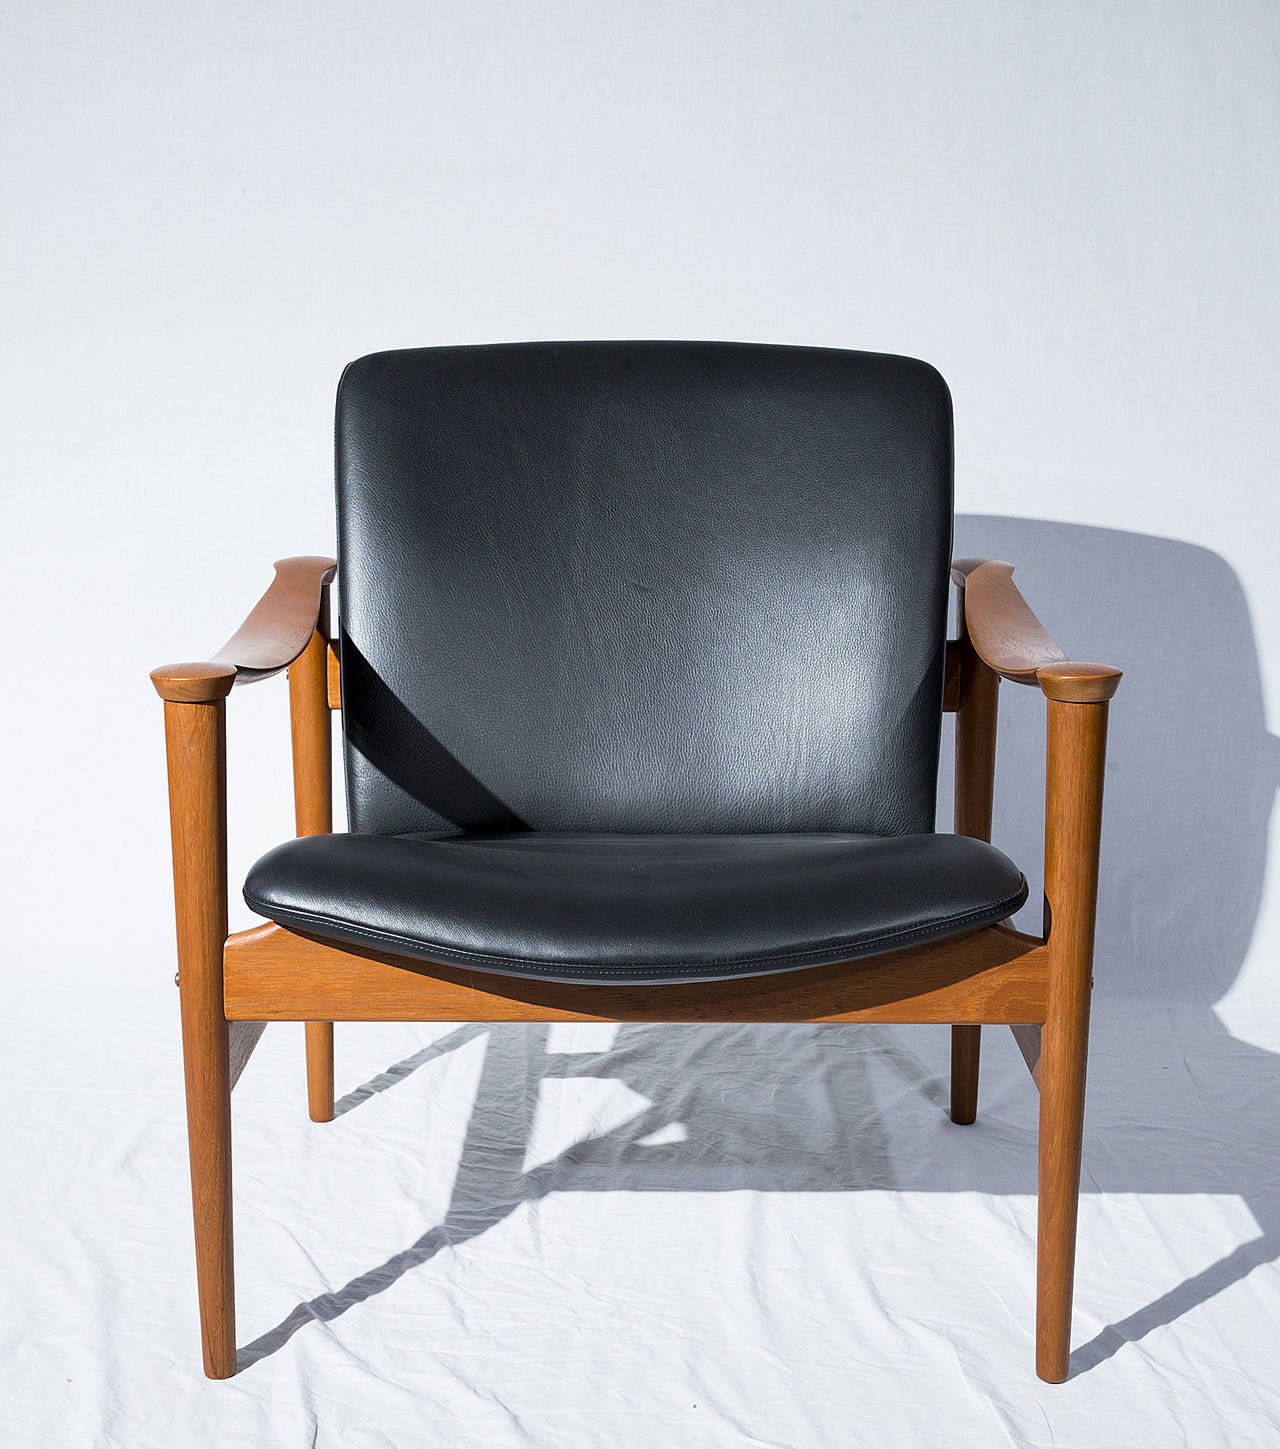 Sessel von Fredrik Kayser aus dem Jahr 1961, hergestellt von Vatne Mobler. Hinweis: Wir haben ein Paar verfügbar.